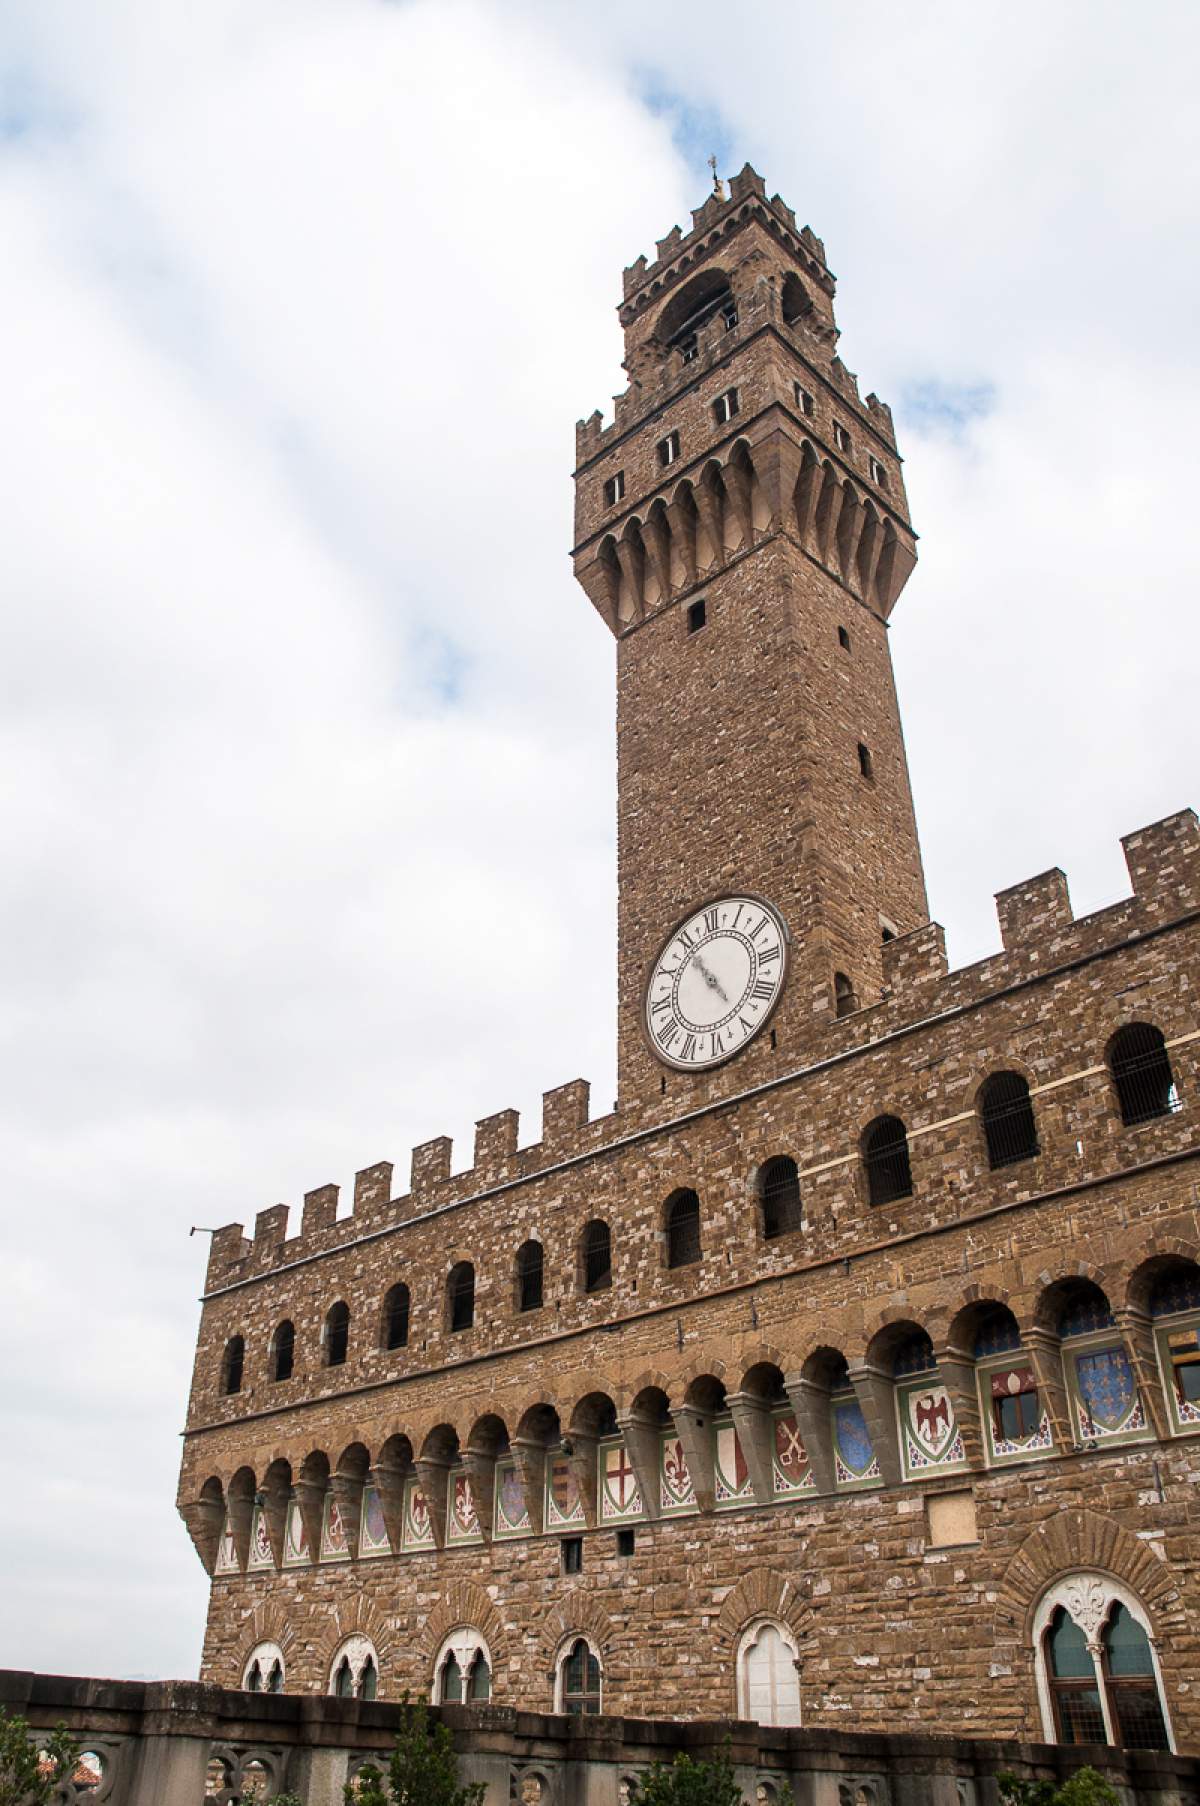 Palazzo Vecchio à Florence, Italie